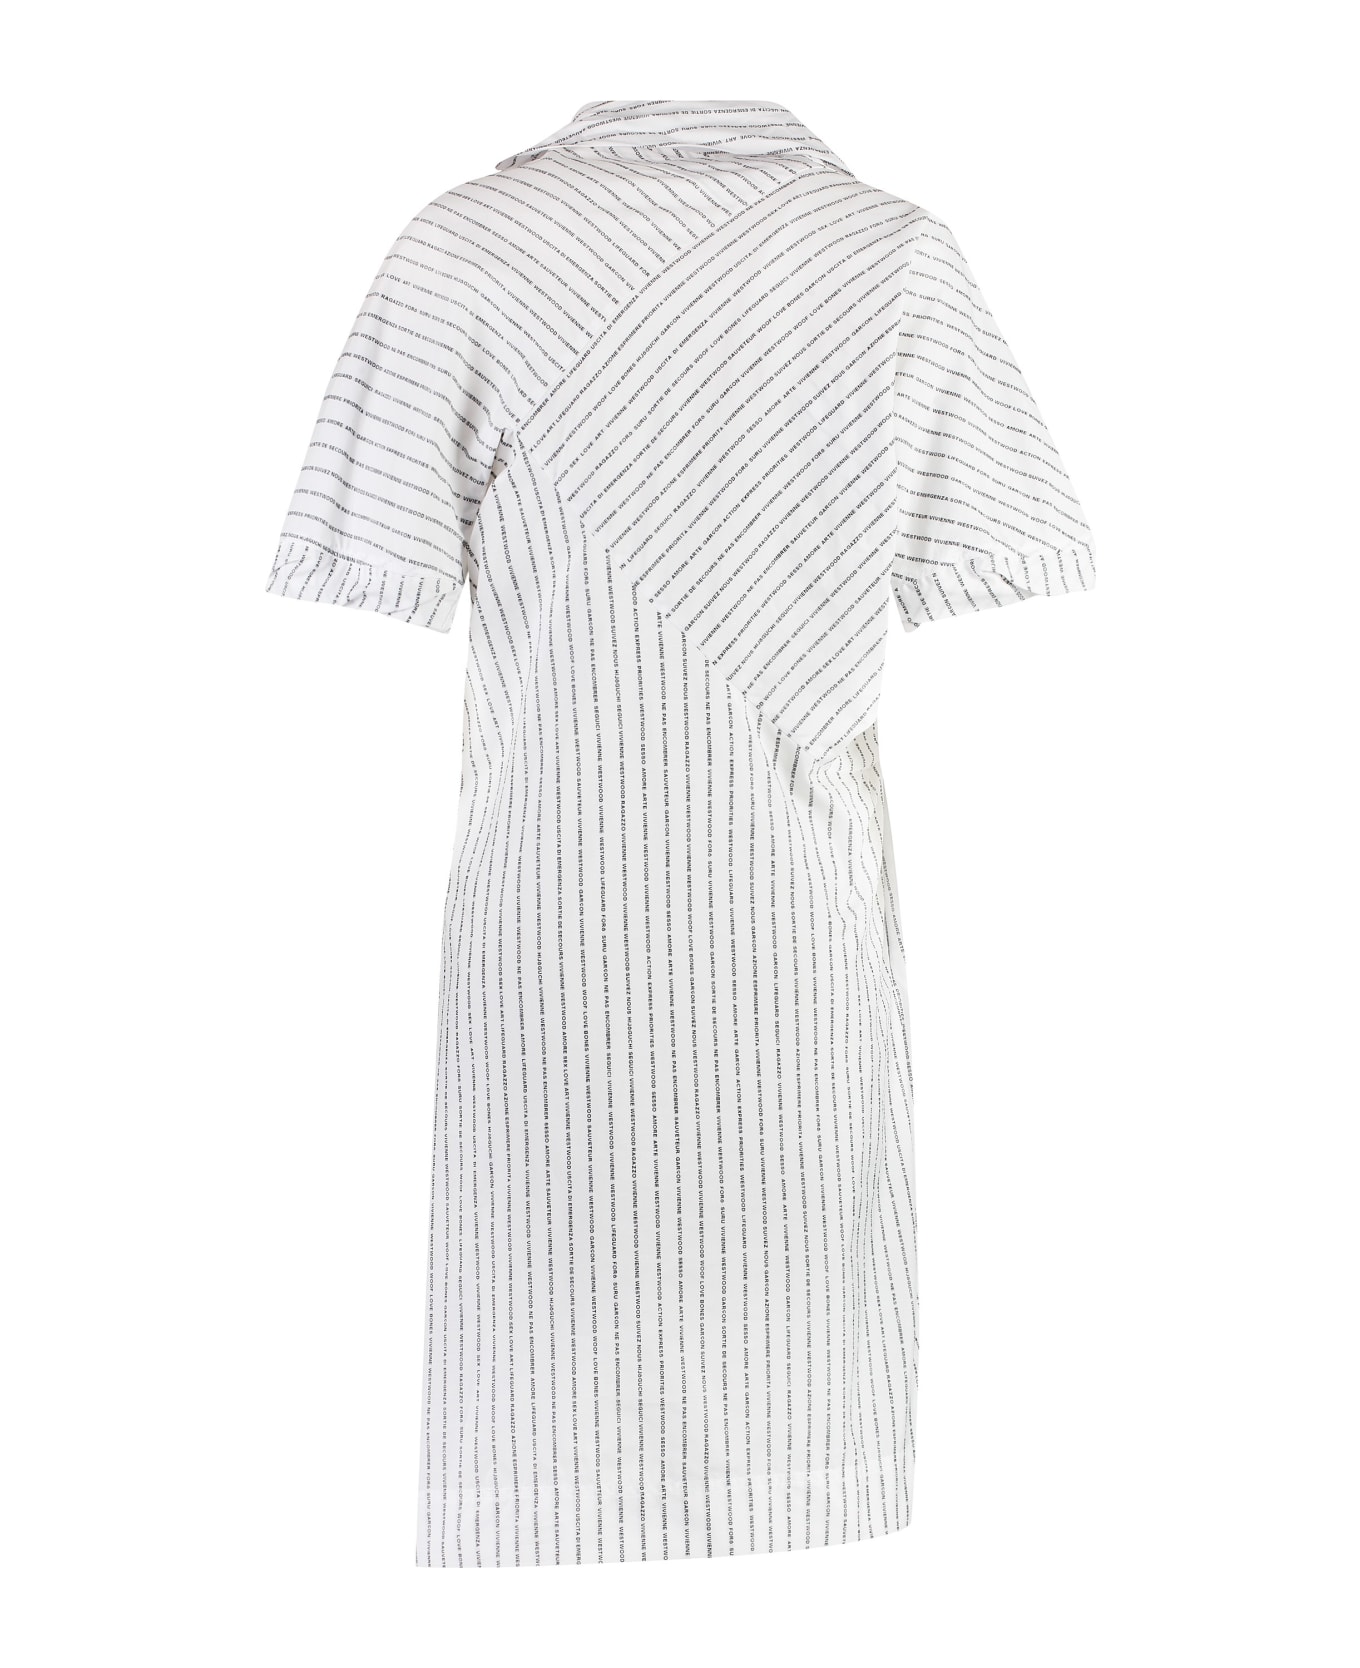 Vivienne Westwood Cotton Shirtdress - White